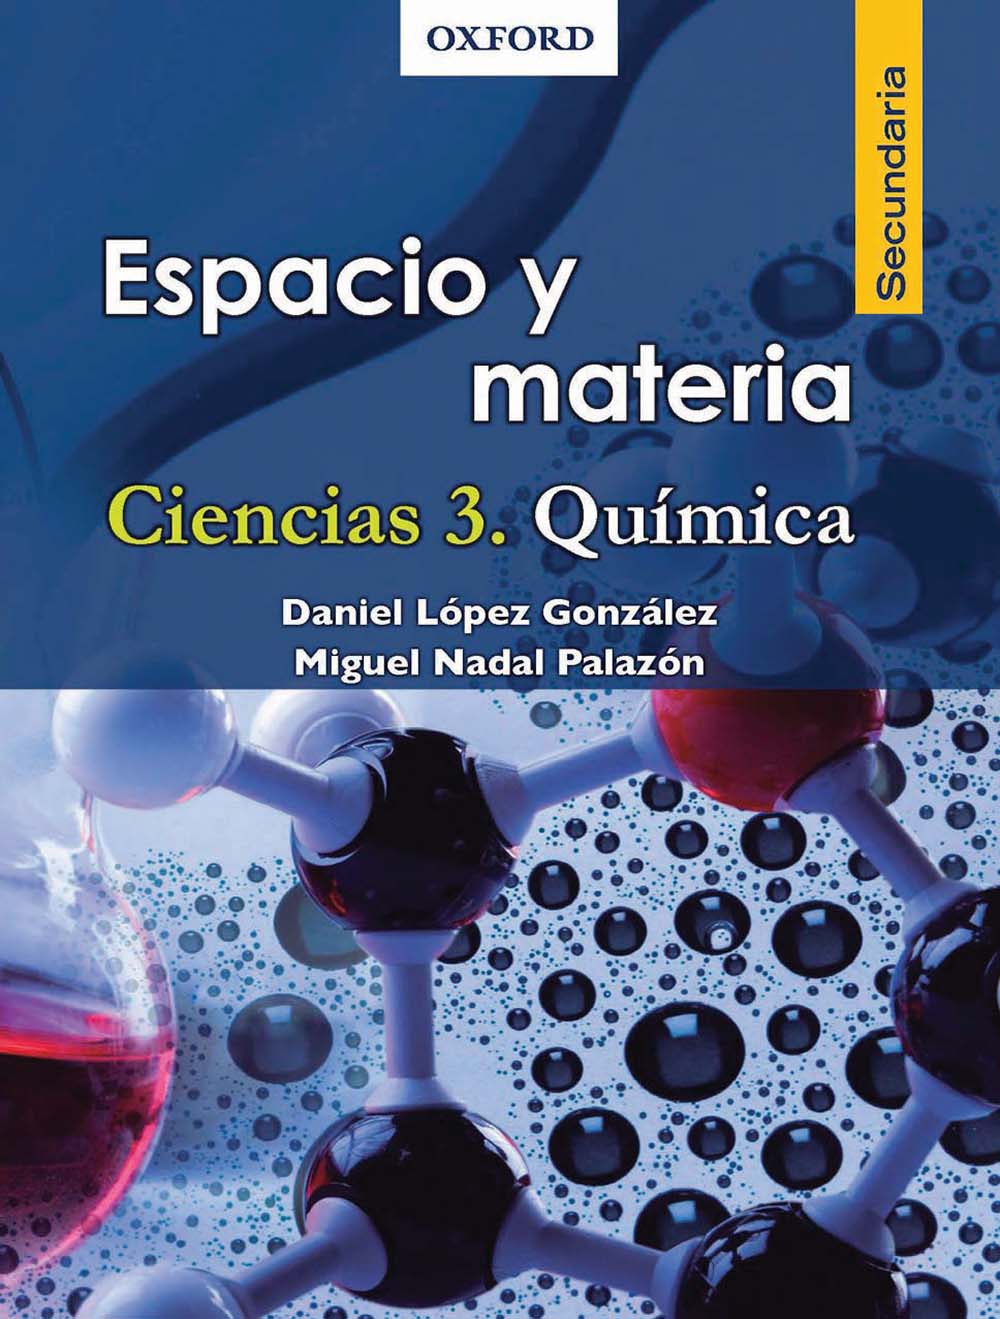 Espacio y materia Ciencias 3 Química, Editorial: Oxford University Press, Nivel: Secundaria, Grado: 3